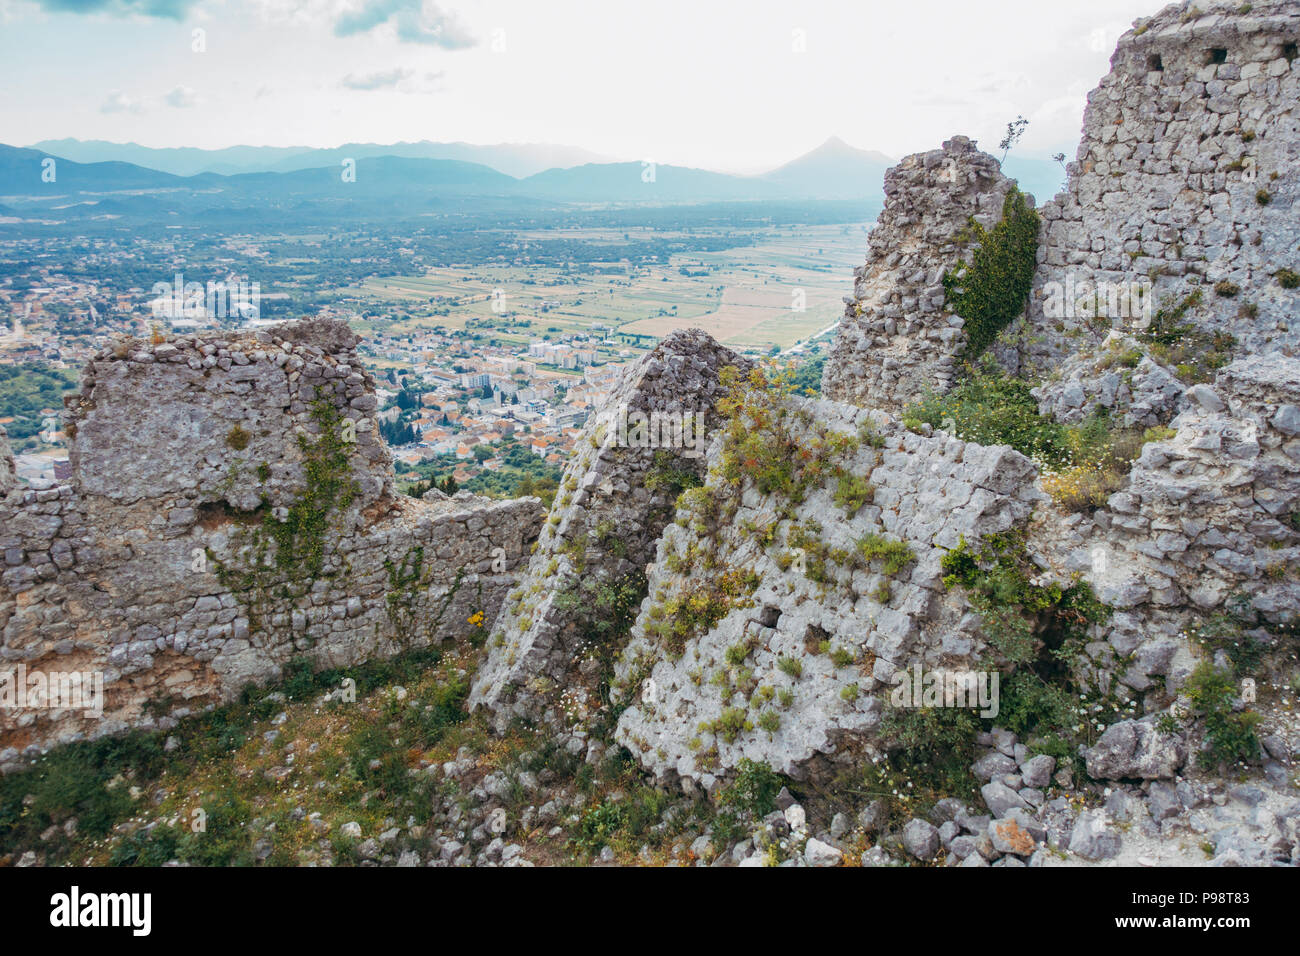 Les négligés et envahis par la forteresse médiévale de Stjepan Vukčić Kosača Herzog au sommet d'une colline près de Ljubuski, BiH Banque D'Images